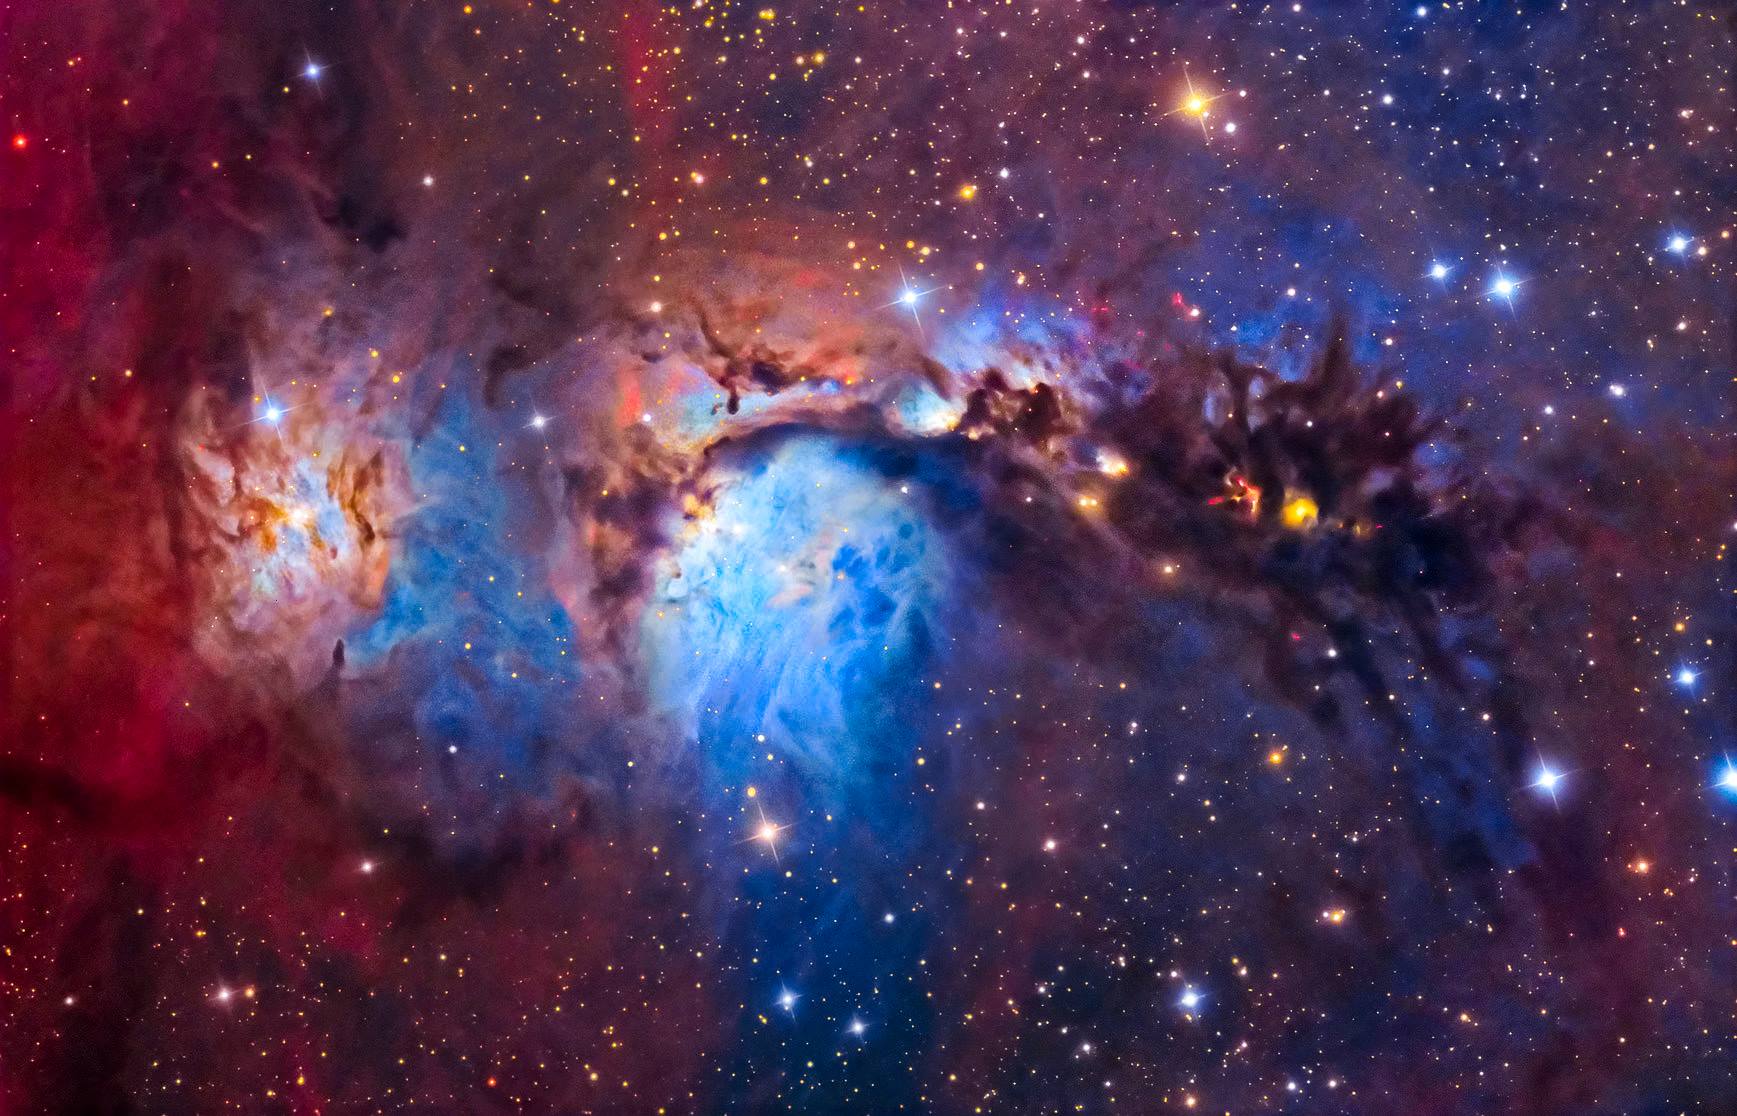 1080p reflection nebula